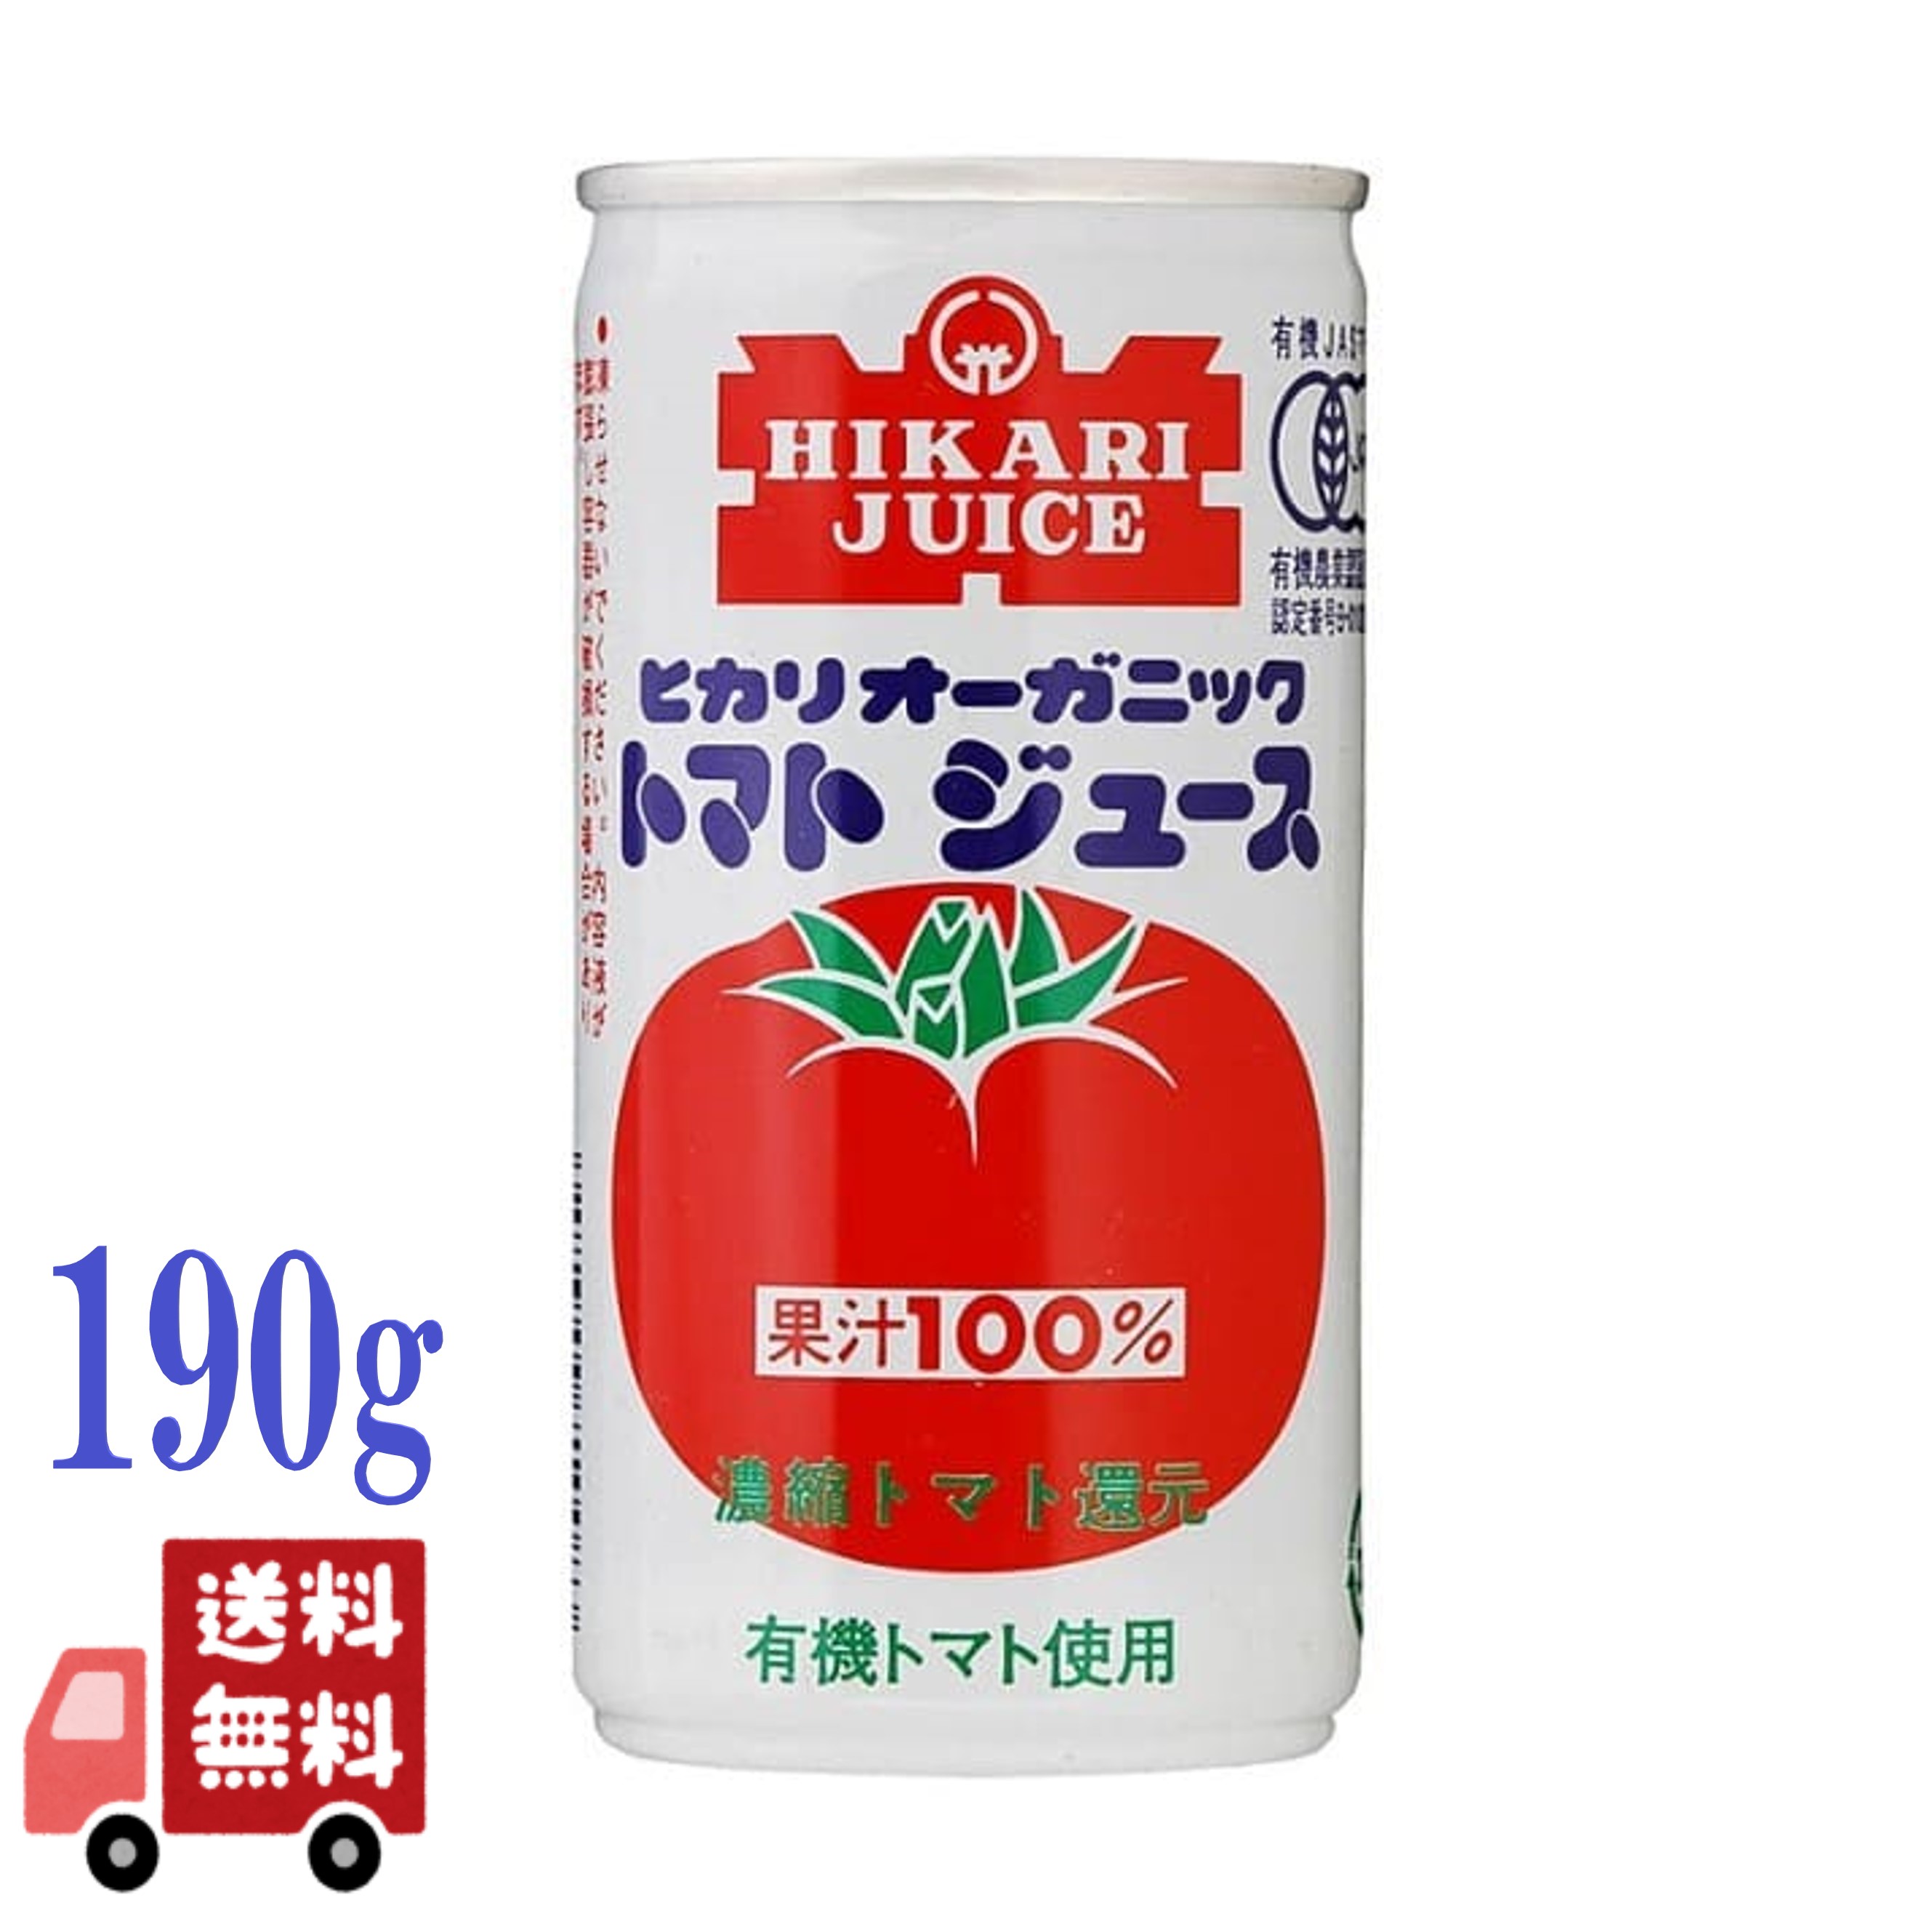 ヒカリ 有機 トマトジュース 190g 有塩 光食品 オーガニック 野菜ジュース 香料 保存料 着色料 酸味料不使用